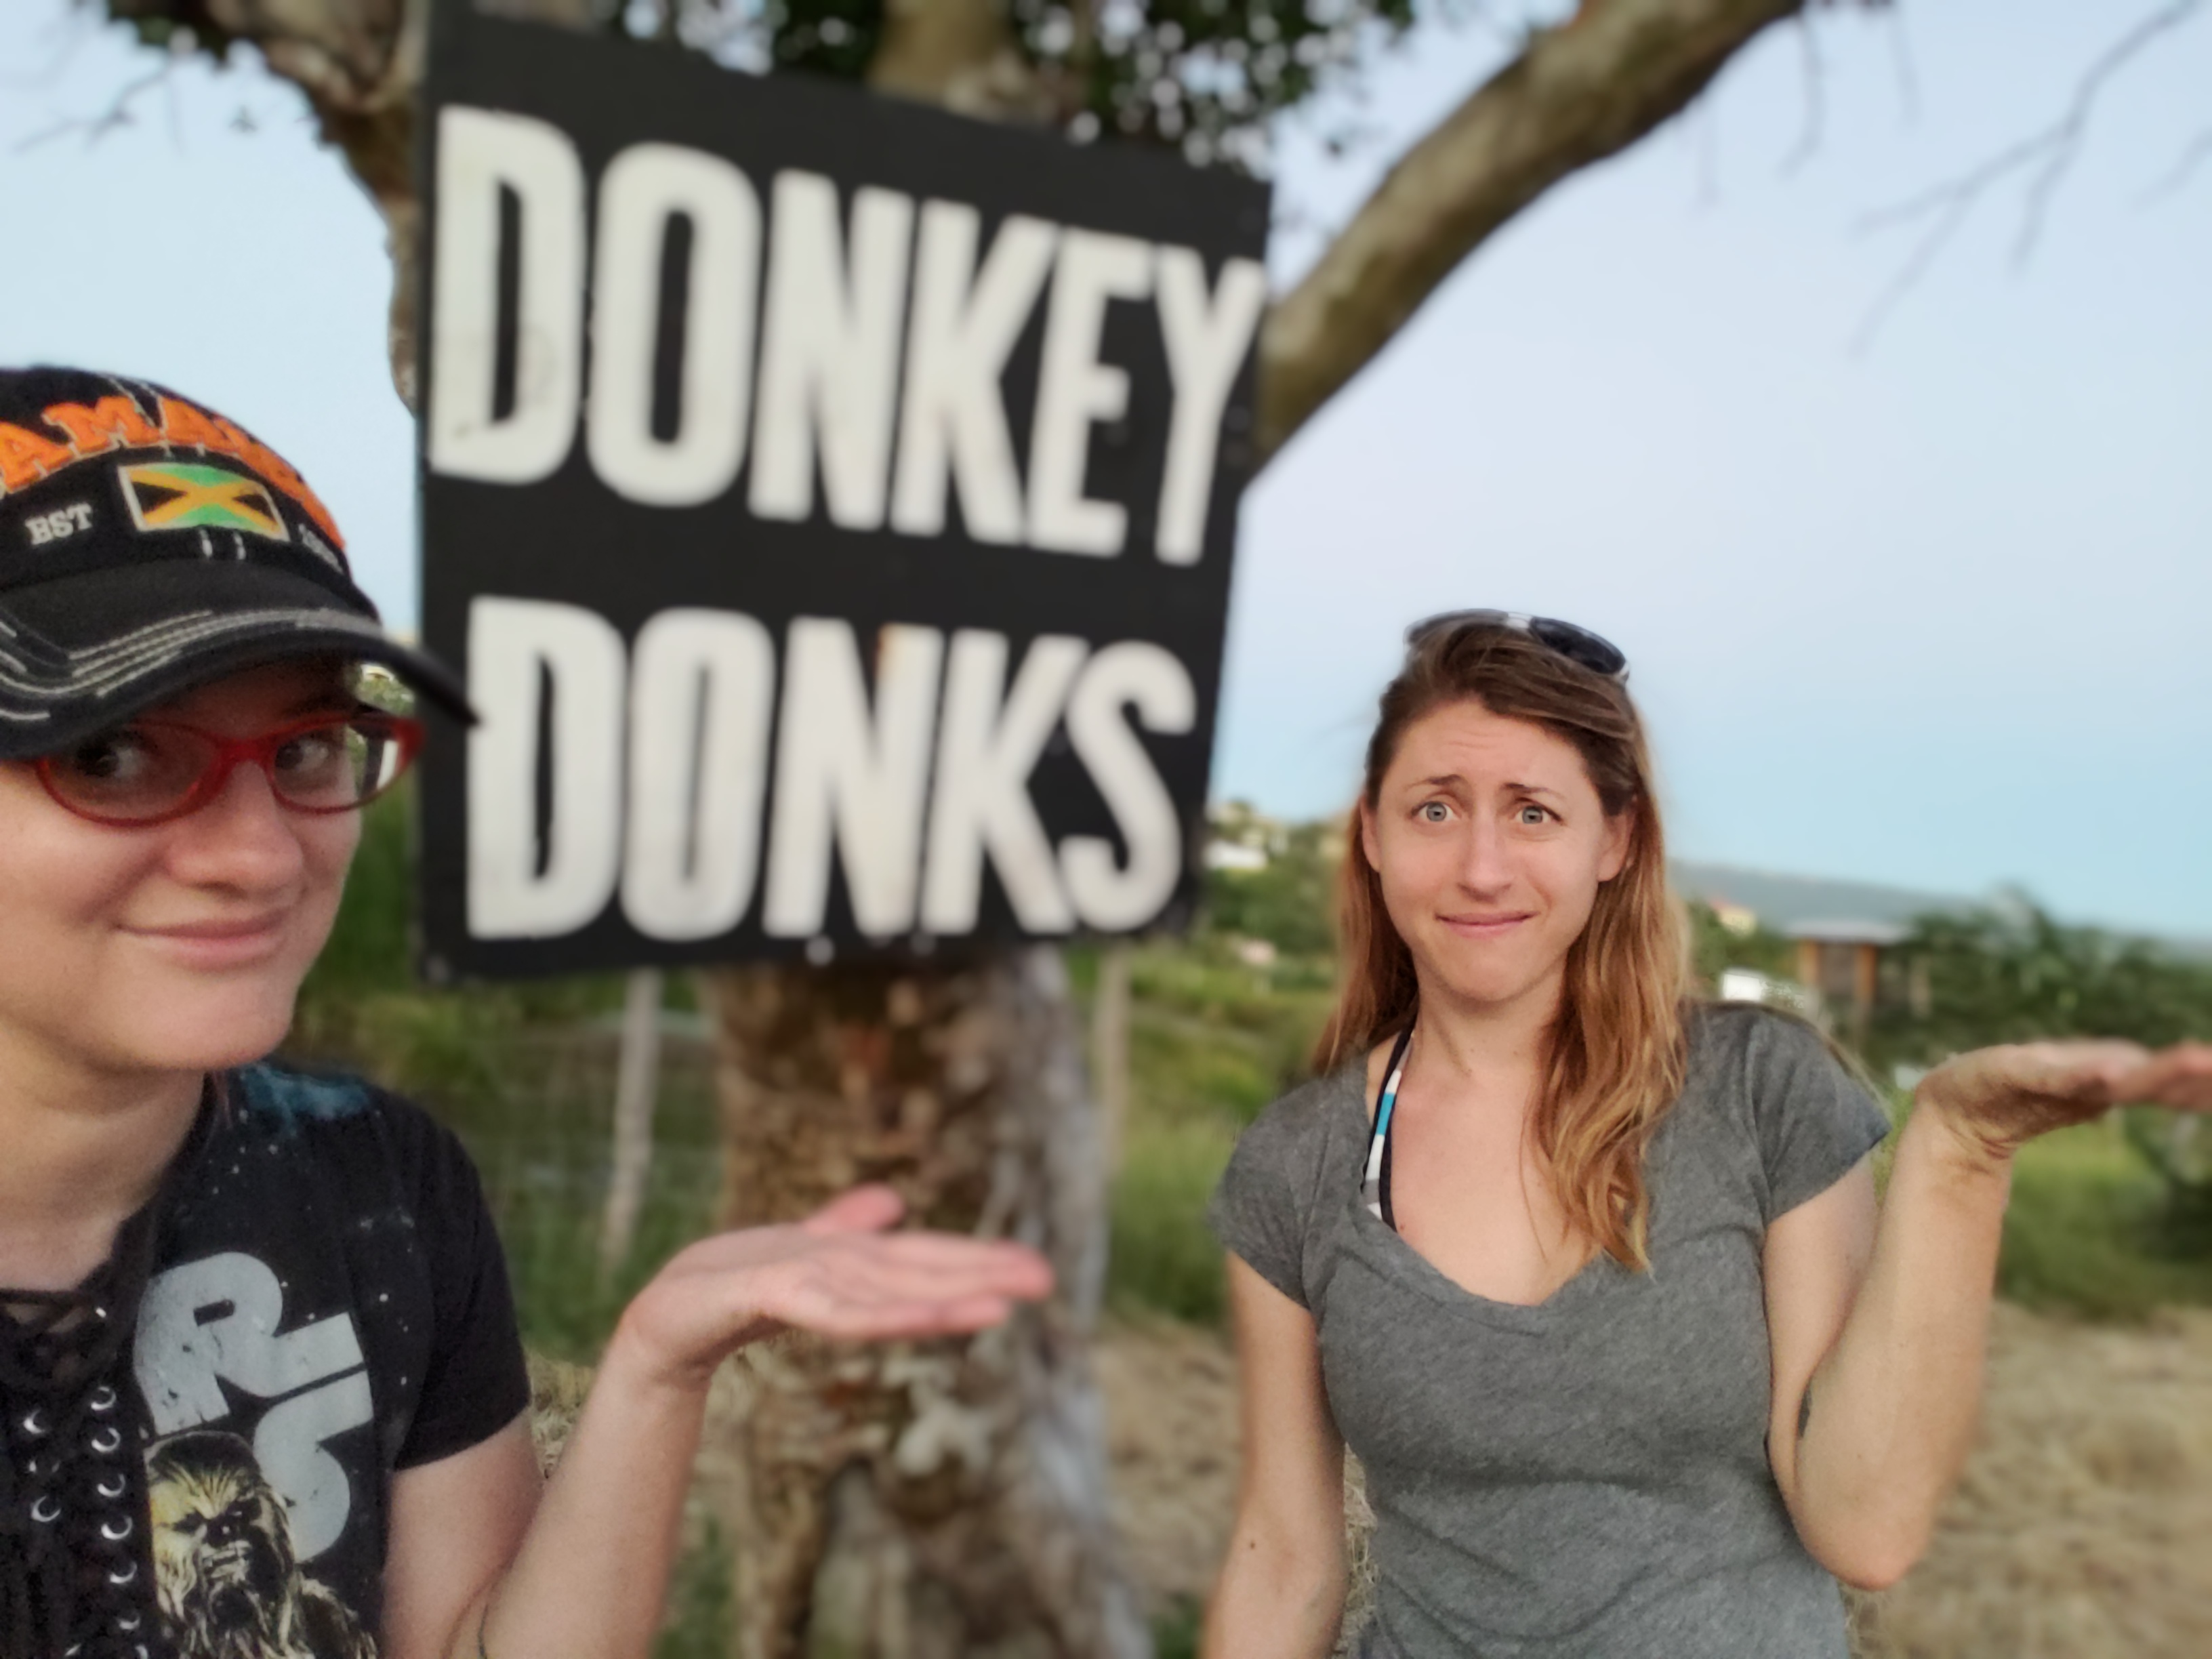 donkey 